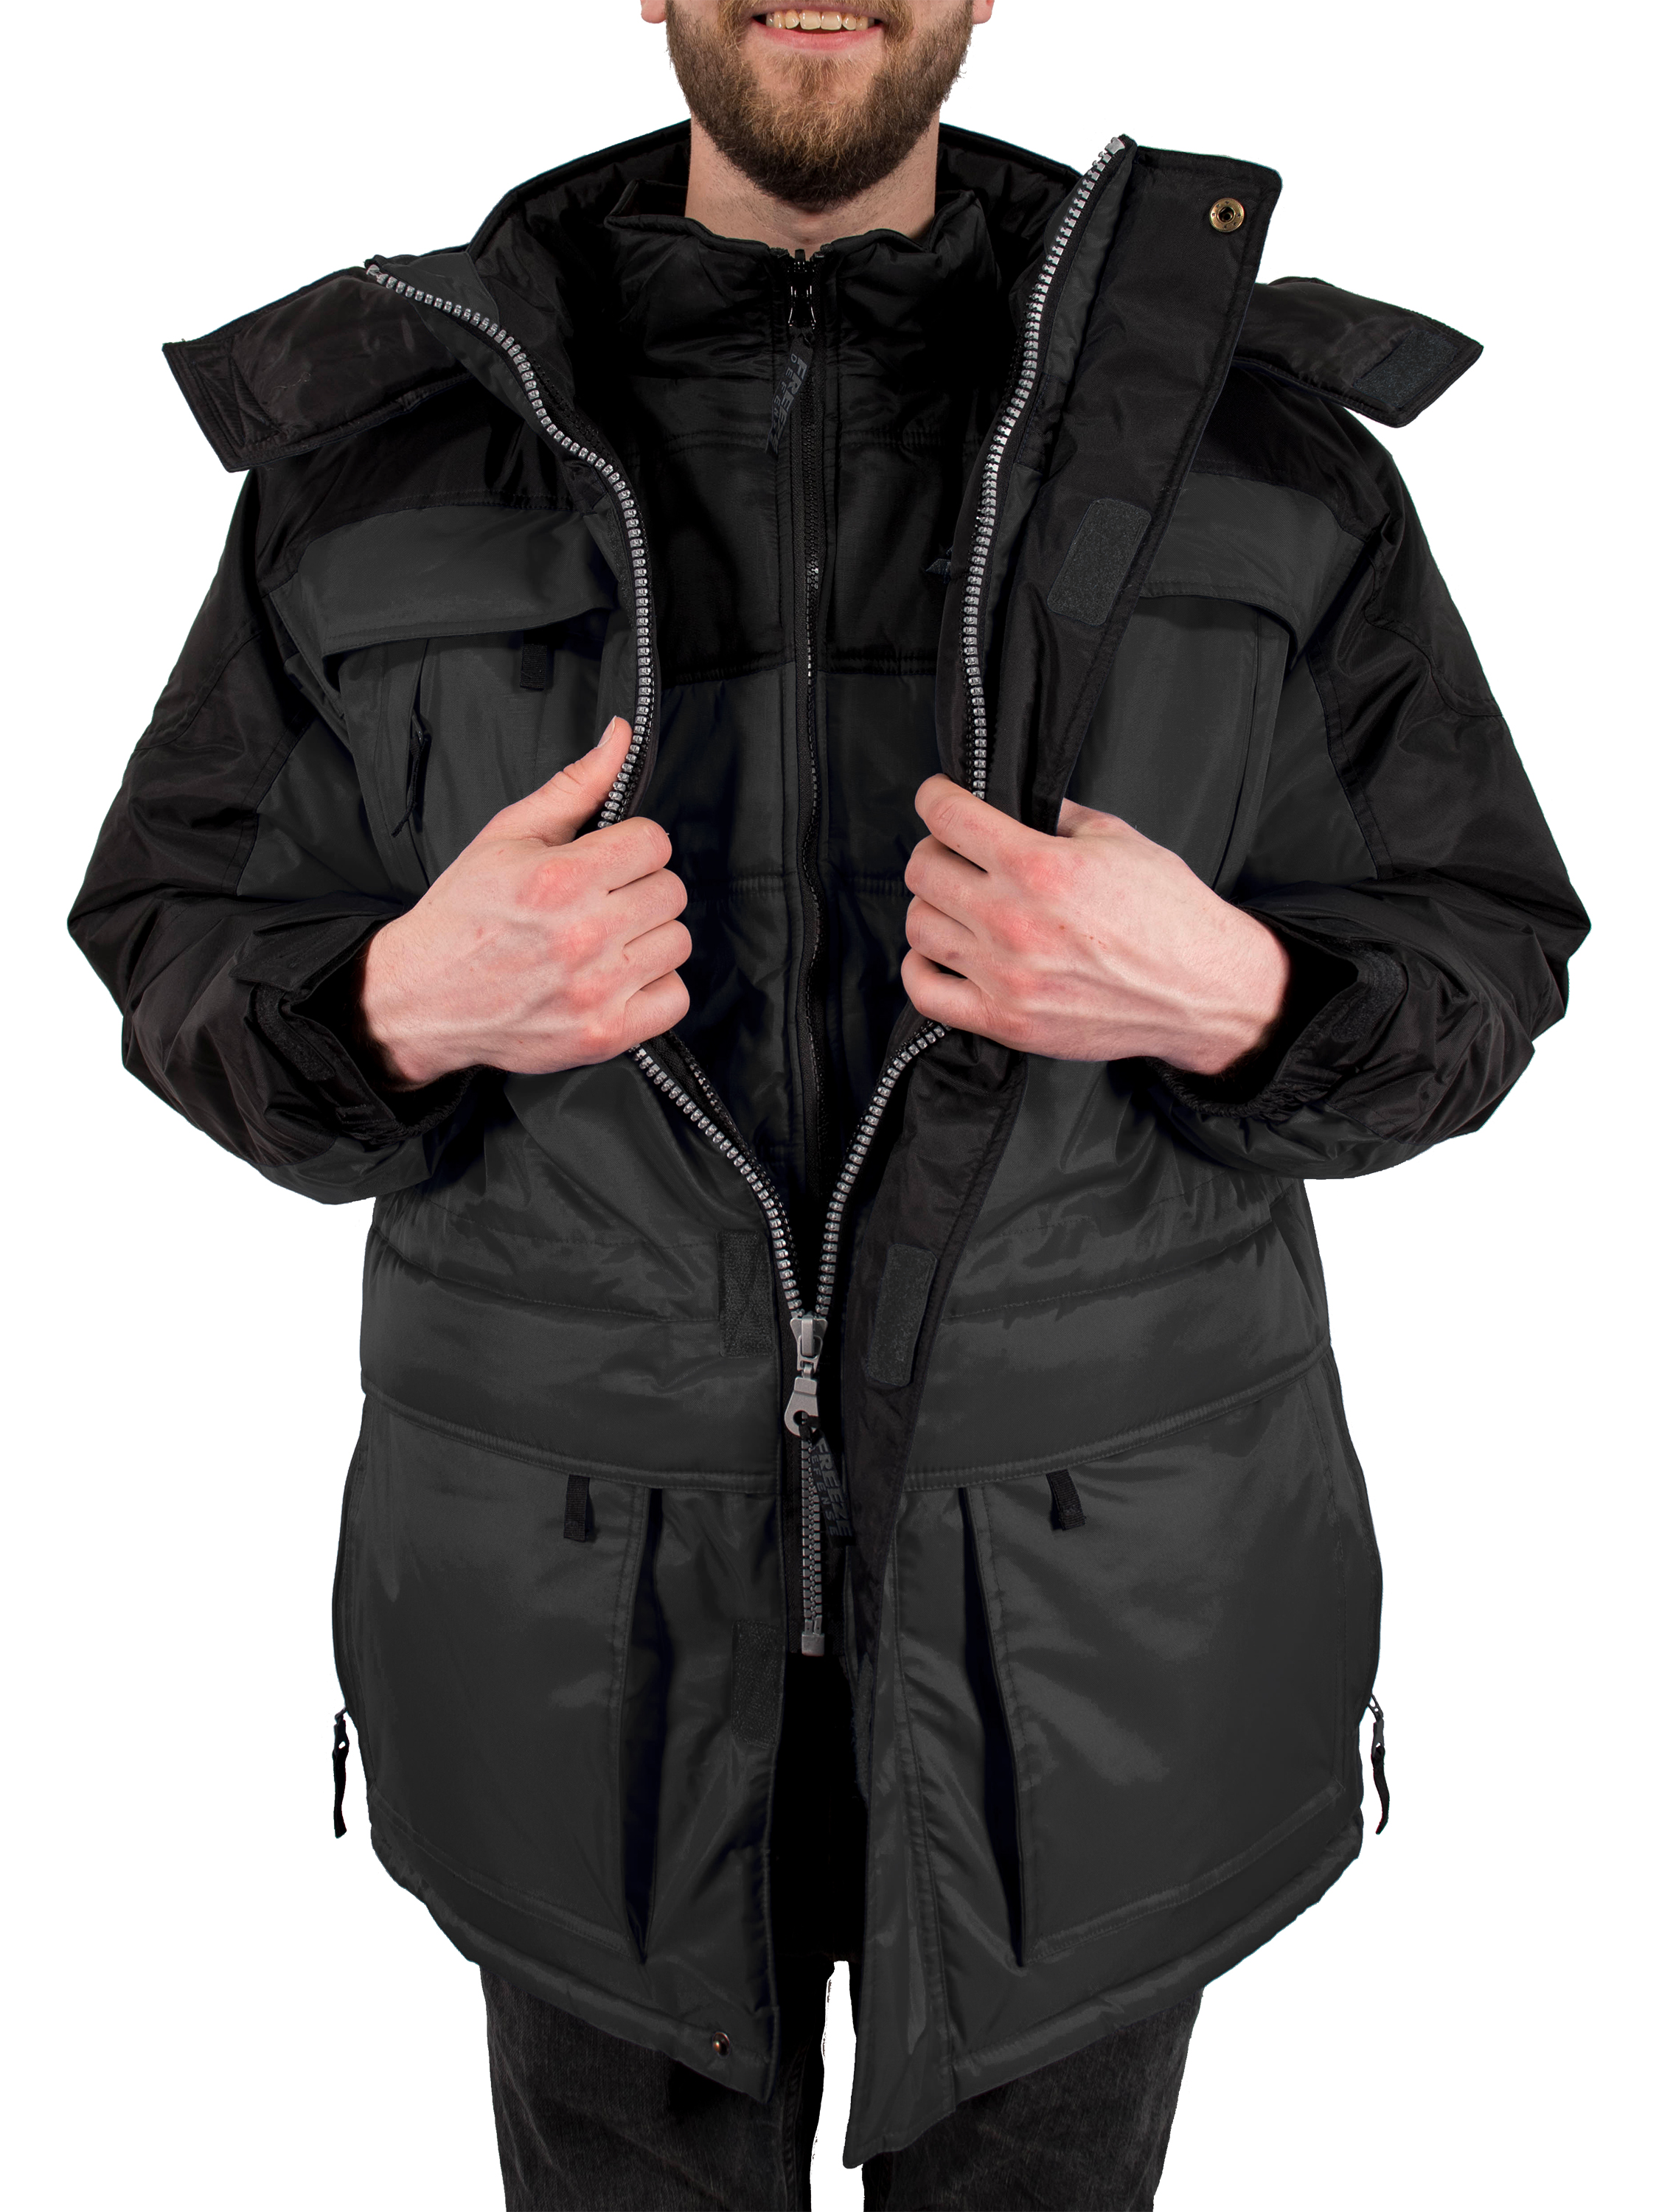 Freeze Defense Big & Tall Men's 3in1 Winter Jacket Coat Parka & Vest (6XL, Gray) - image 4 of 10